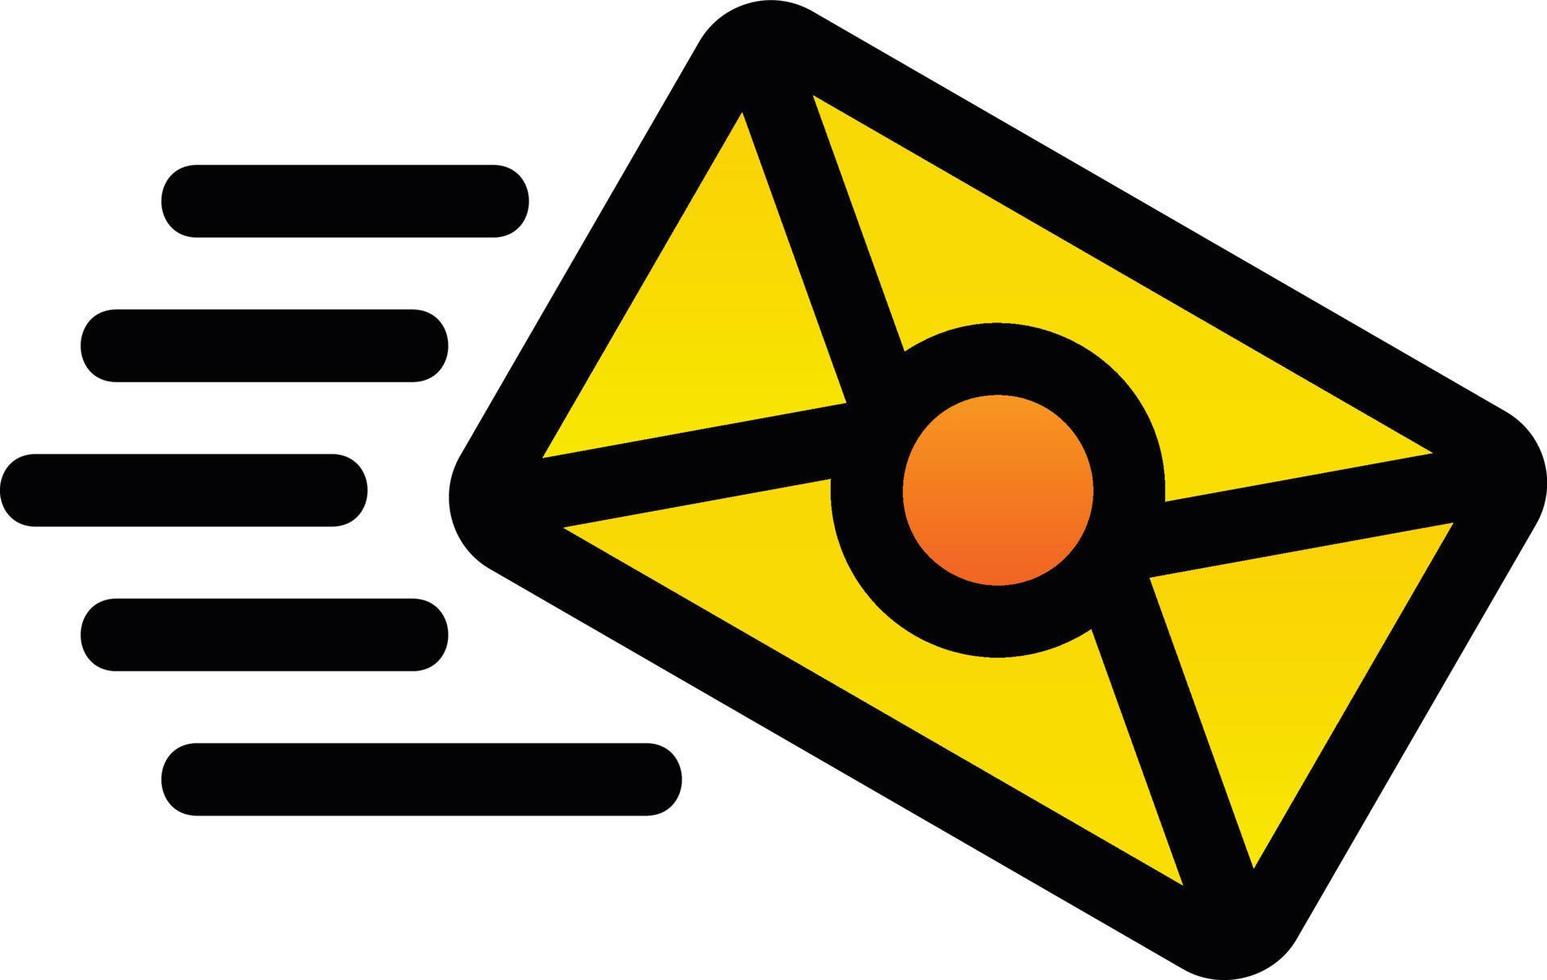 Mail Vector Icon Design